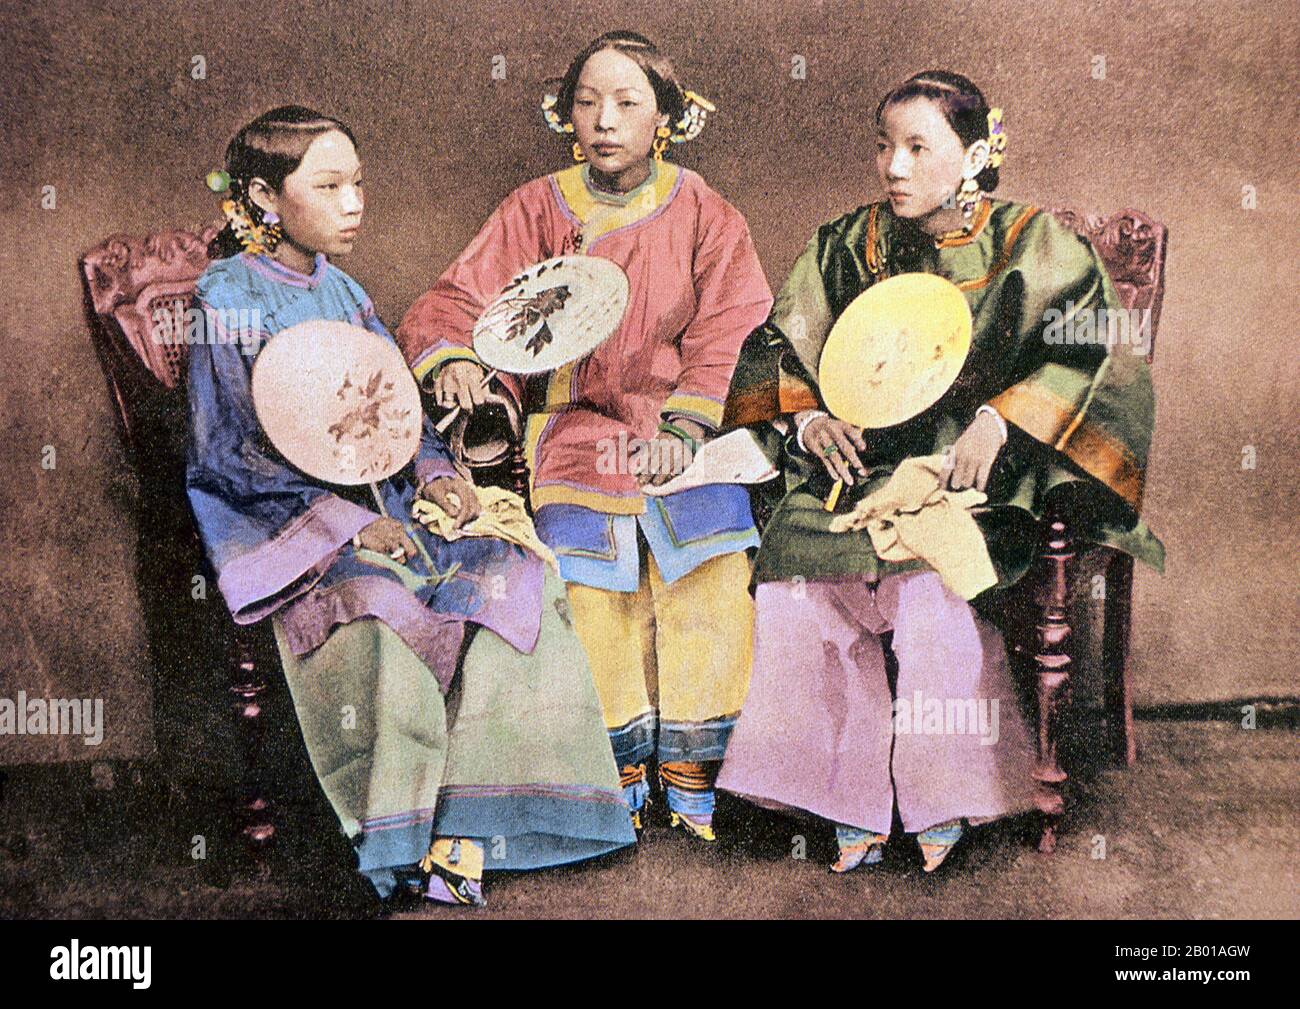 Chine : trois femmes chinoises aux pieds reliés de Xiamen. Photo de Lai Afong (1839-1890), c. 1870. Lai Afong était un photographe qui a commencé Afong Studio, le studio photographique le plus réussi de la fin de la dynastie Qing. Il est généralement considéré comme le photographe chinois le plus important du 19th siècle. La fixation des pieds (pinyin: chanzu, littéralement «pieds reliés») était une coutume pratiquée sur les jeunes filles et les femmes pendant environ mille ans en Chine, commençant au 10th siècle et se terminant dans la première moitié du 20th siècle. Banque D'Images